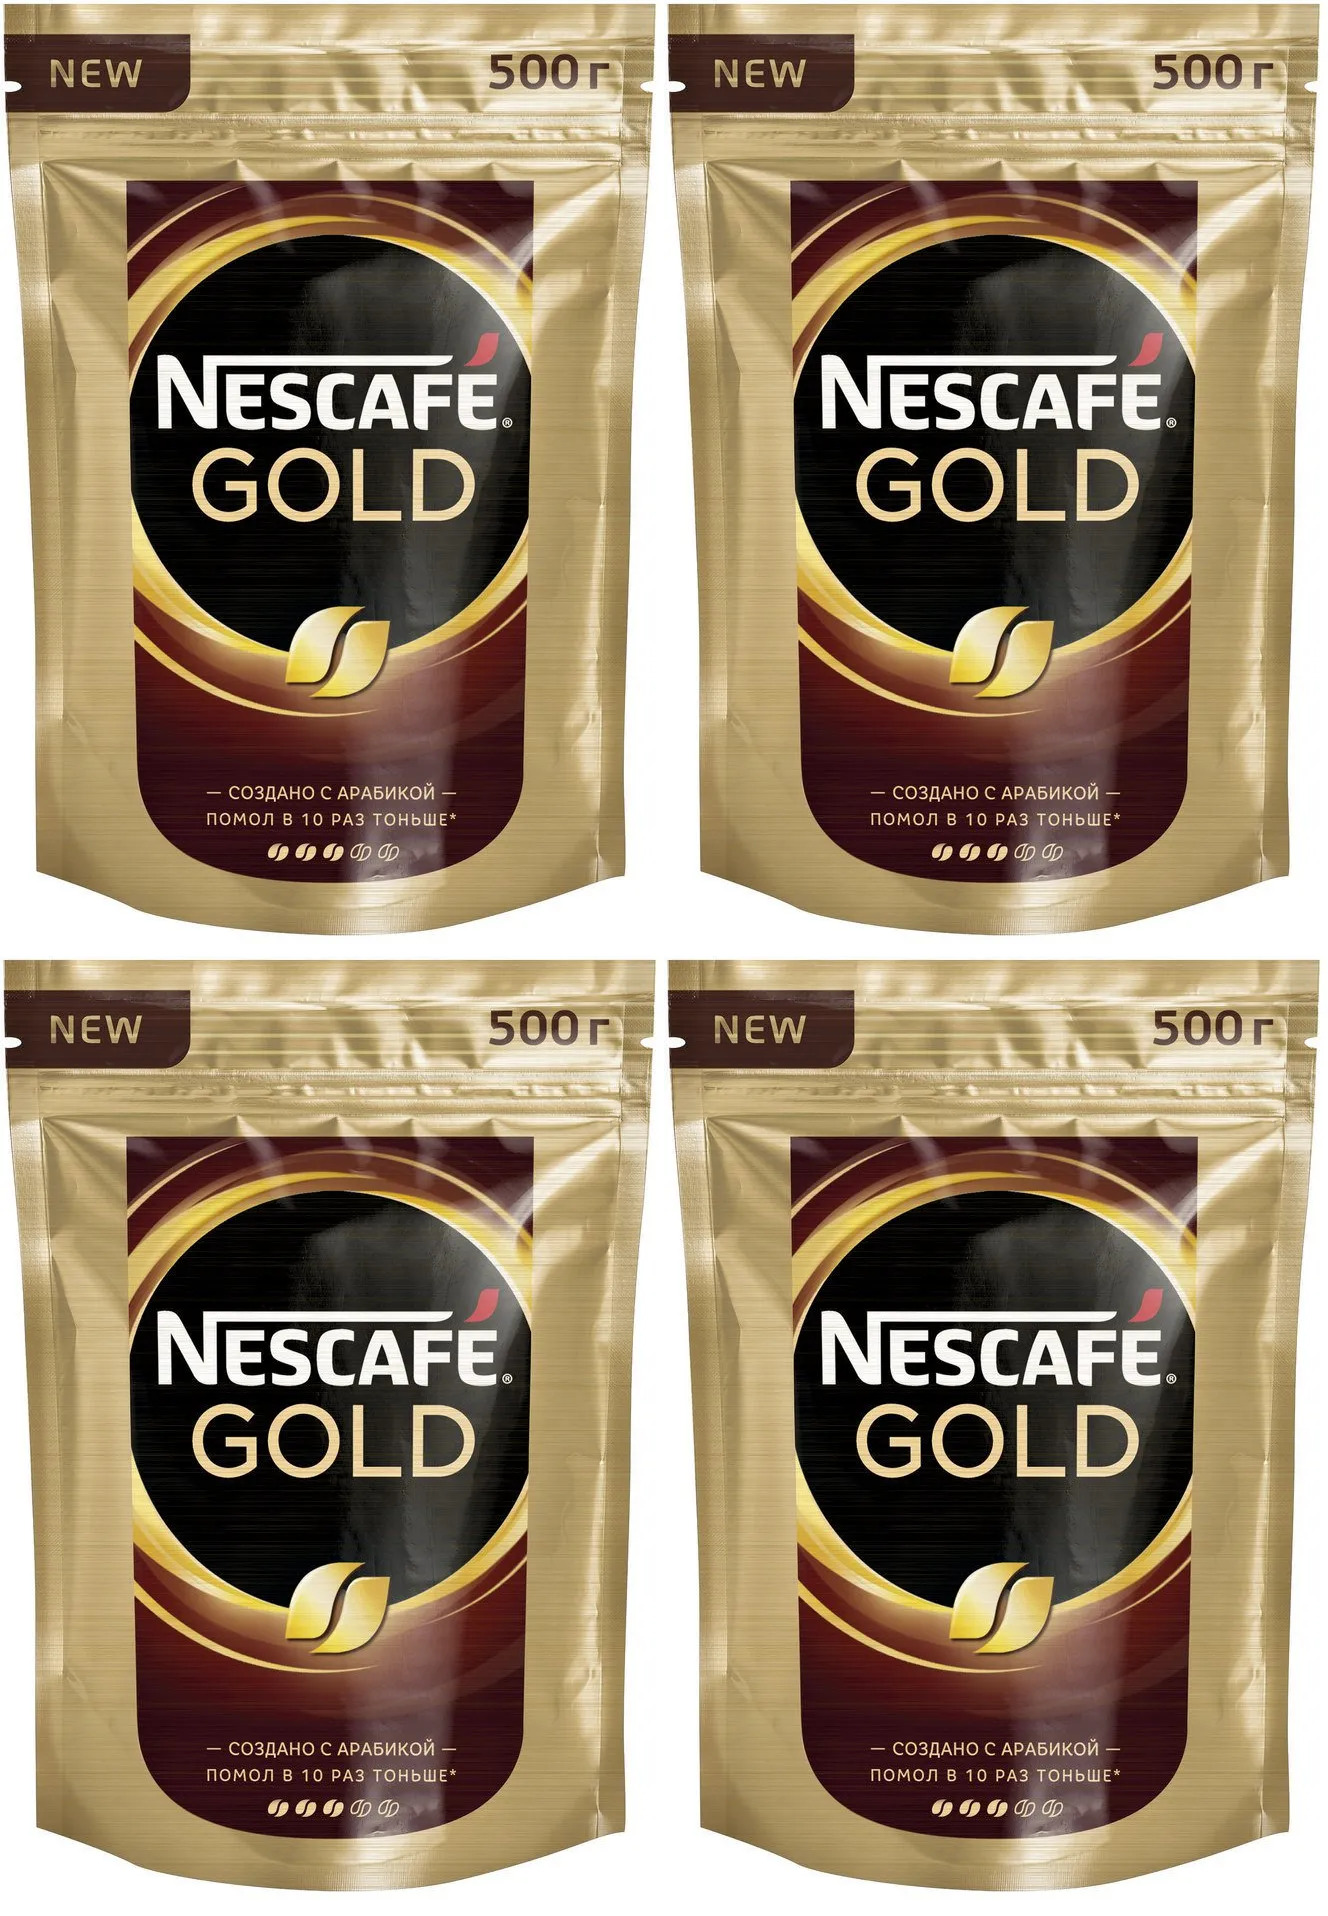 Nescafe gold 190 г. Нескафе Голд 190 грамм пакет. Кофе Нескафе Голд 190г пакет в Пятерочке. Кофе Нескафе Голд 190г. Нескафе Голд мягкая упаковка 190 грамм.